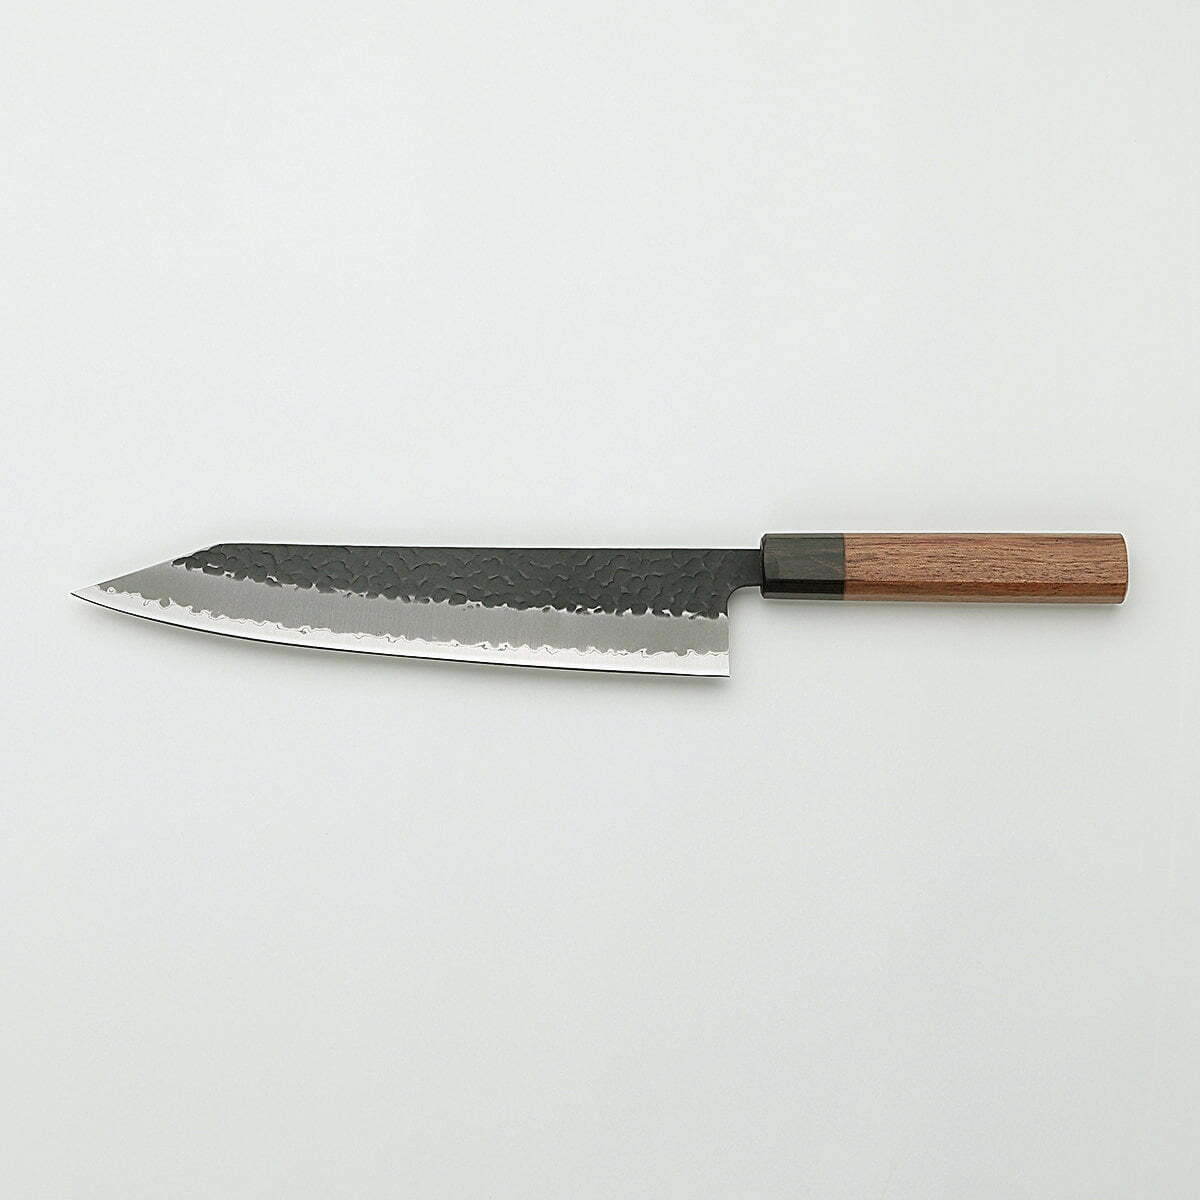 סכין שף רב-תכליתית קִּירִיצוּקֶה גִּיוּטוֹ 230מ״מ מחוזקת 3 שכבות: פלדת פחמן יפנית מתקדמת מסוג Aogami Super עטופה פלדת אל-חלד גימור קורואיצ׳י שחור עם ריקוע פטיש ג׳יקו סאקאיי יפן